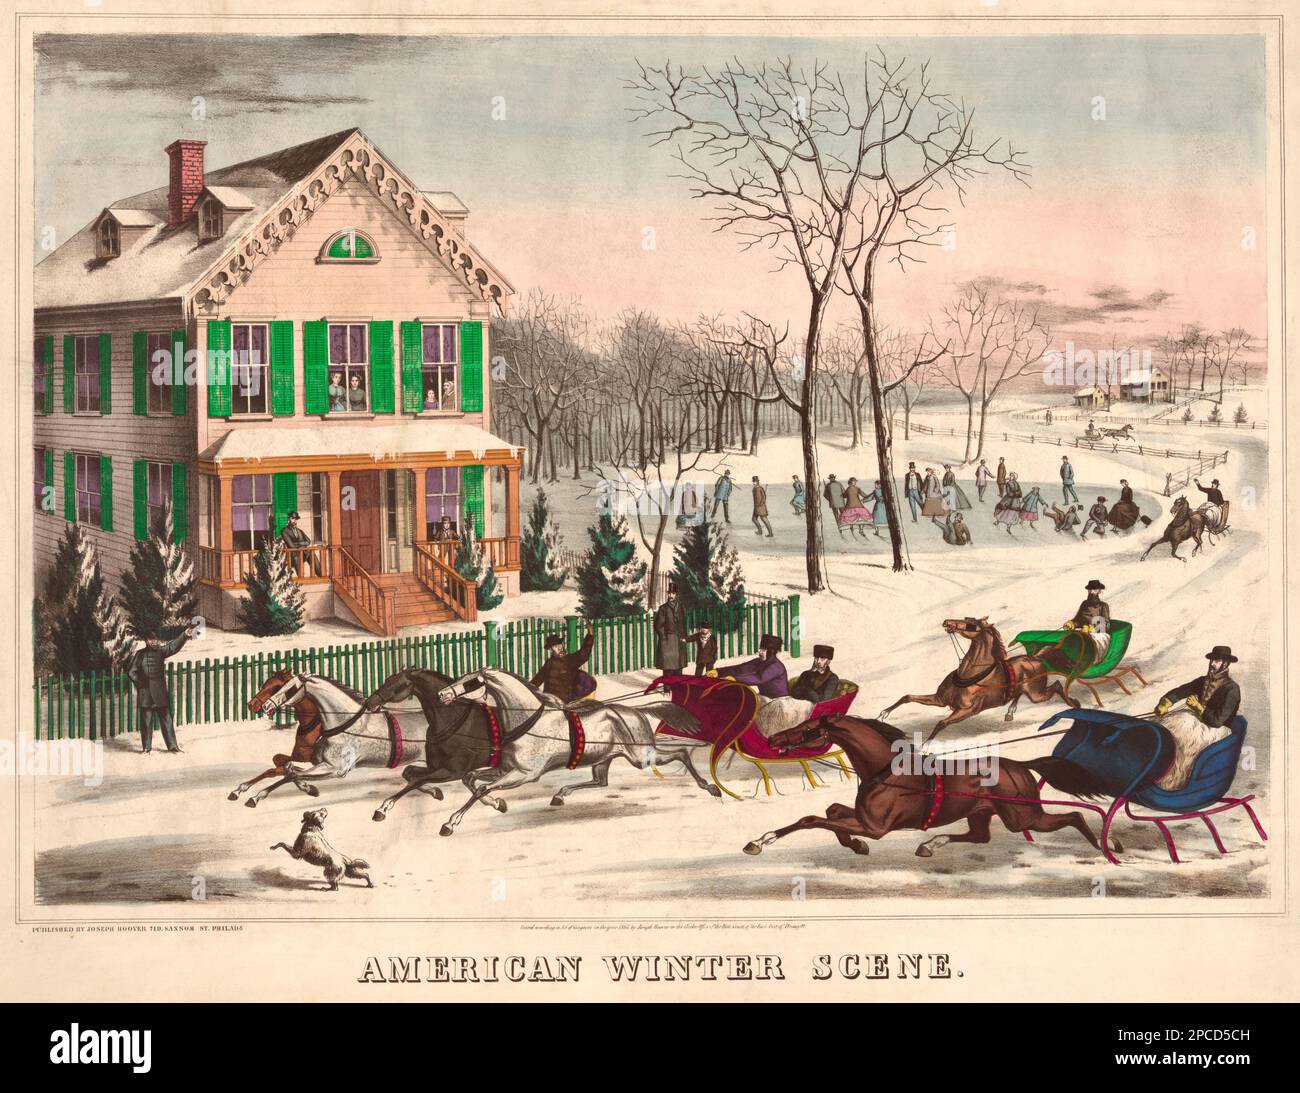 1867 , USA : American winter scene . Four horse-drawn sleighs in front of house. Illustration print pubblished by Joseph Hoover , PHILADELPHIA , USA  - SNOW - NEVE - SPORT - gara delle slitte - slitta da neve -  pattinaggio - skating - bosco - bush - PANORAMA - HOUSE - HOME - CASA - GIOCHI SULLA NEVE - INVERNO - INVERNALI - FOTO STORICHE - HISTORY - GEOGRAFIA - GEOGRAPHY  - cavallo - cavalli - horses -   - landscape - paesaggio - veduta - stampa - illustrazione - illustration - engraving -  ARTE - ARTS - OTTOCENTO - '800 - 800's  ----  Archivio GBB Stock Photo